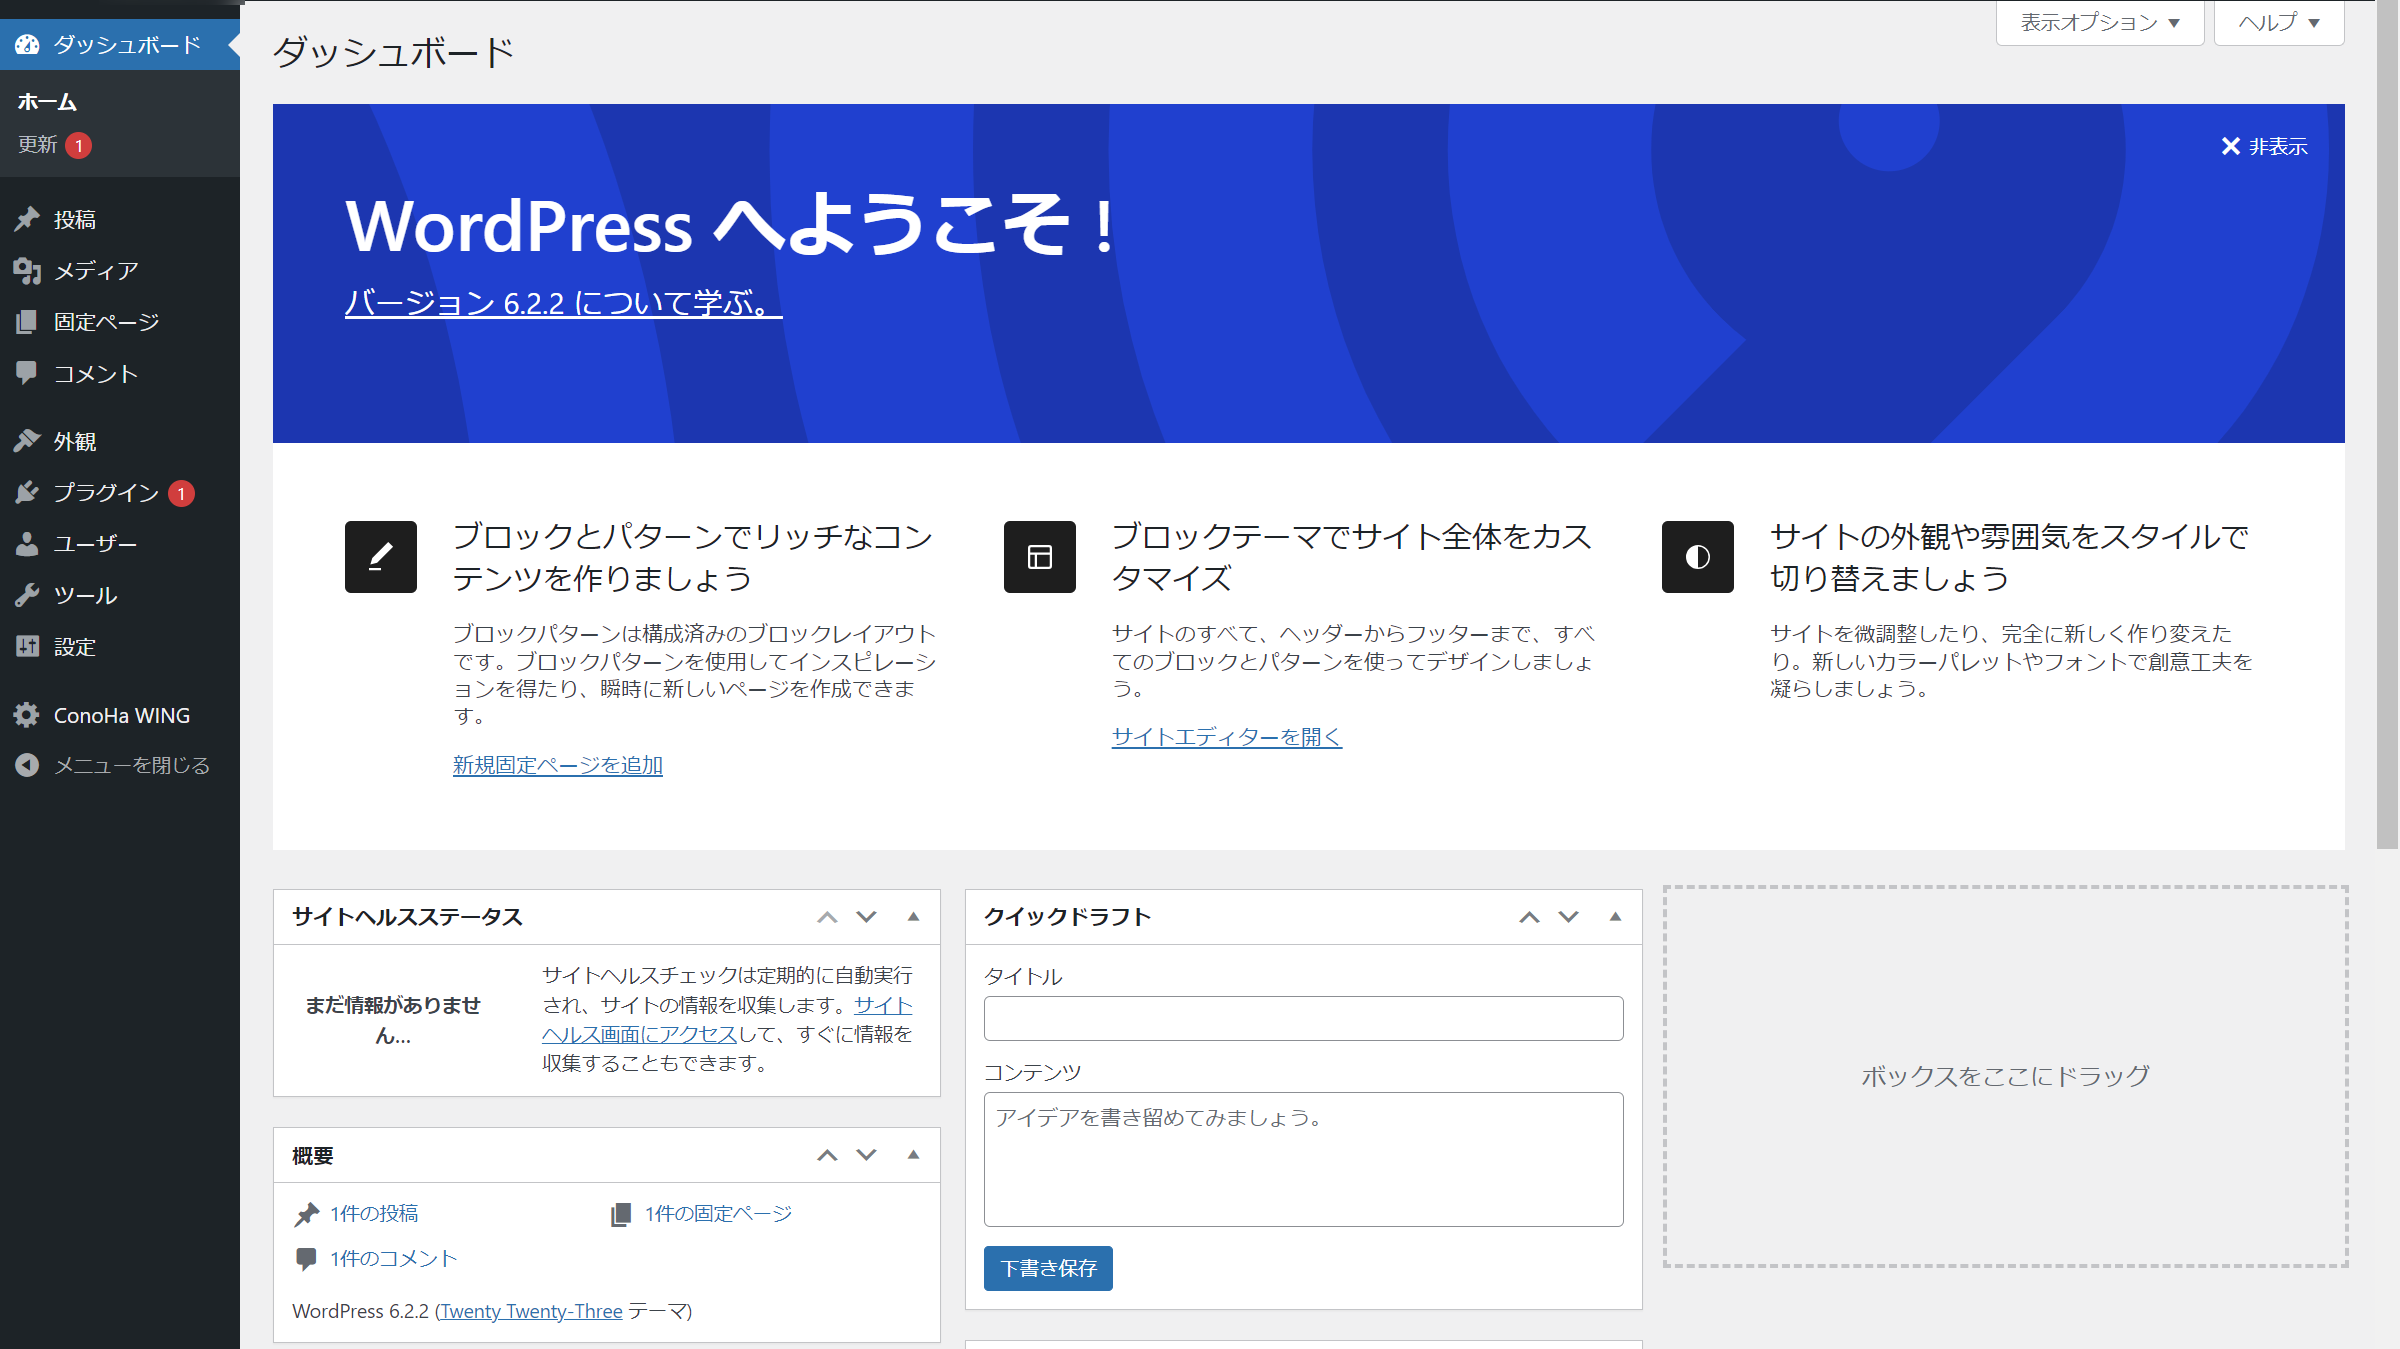 開設初期のWordPressの管理画面